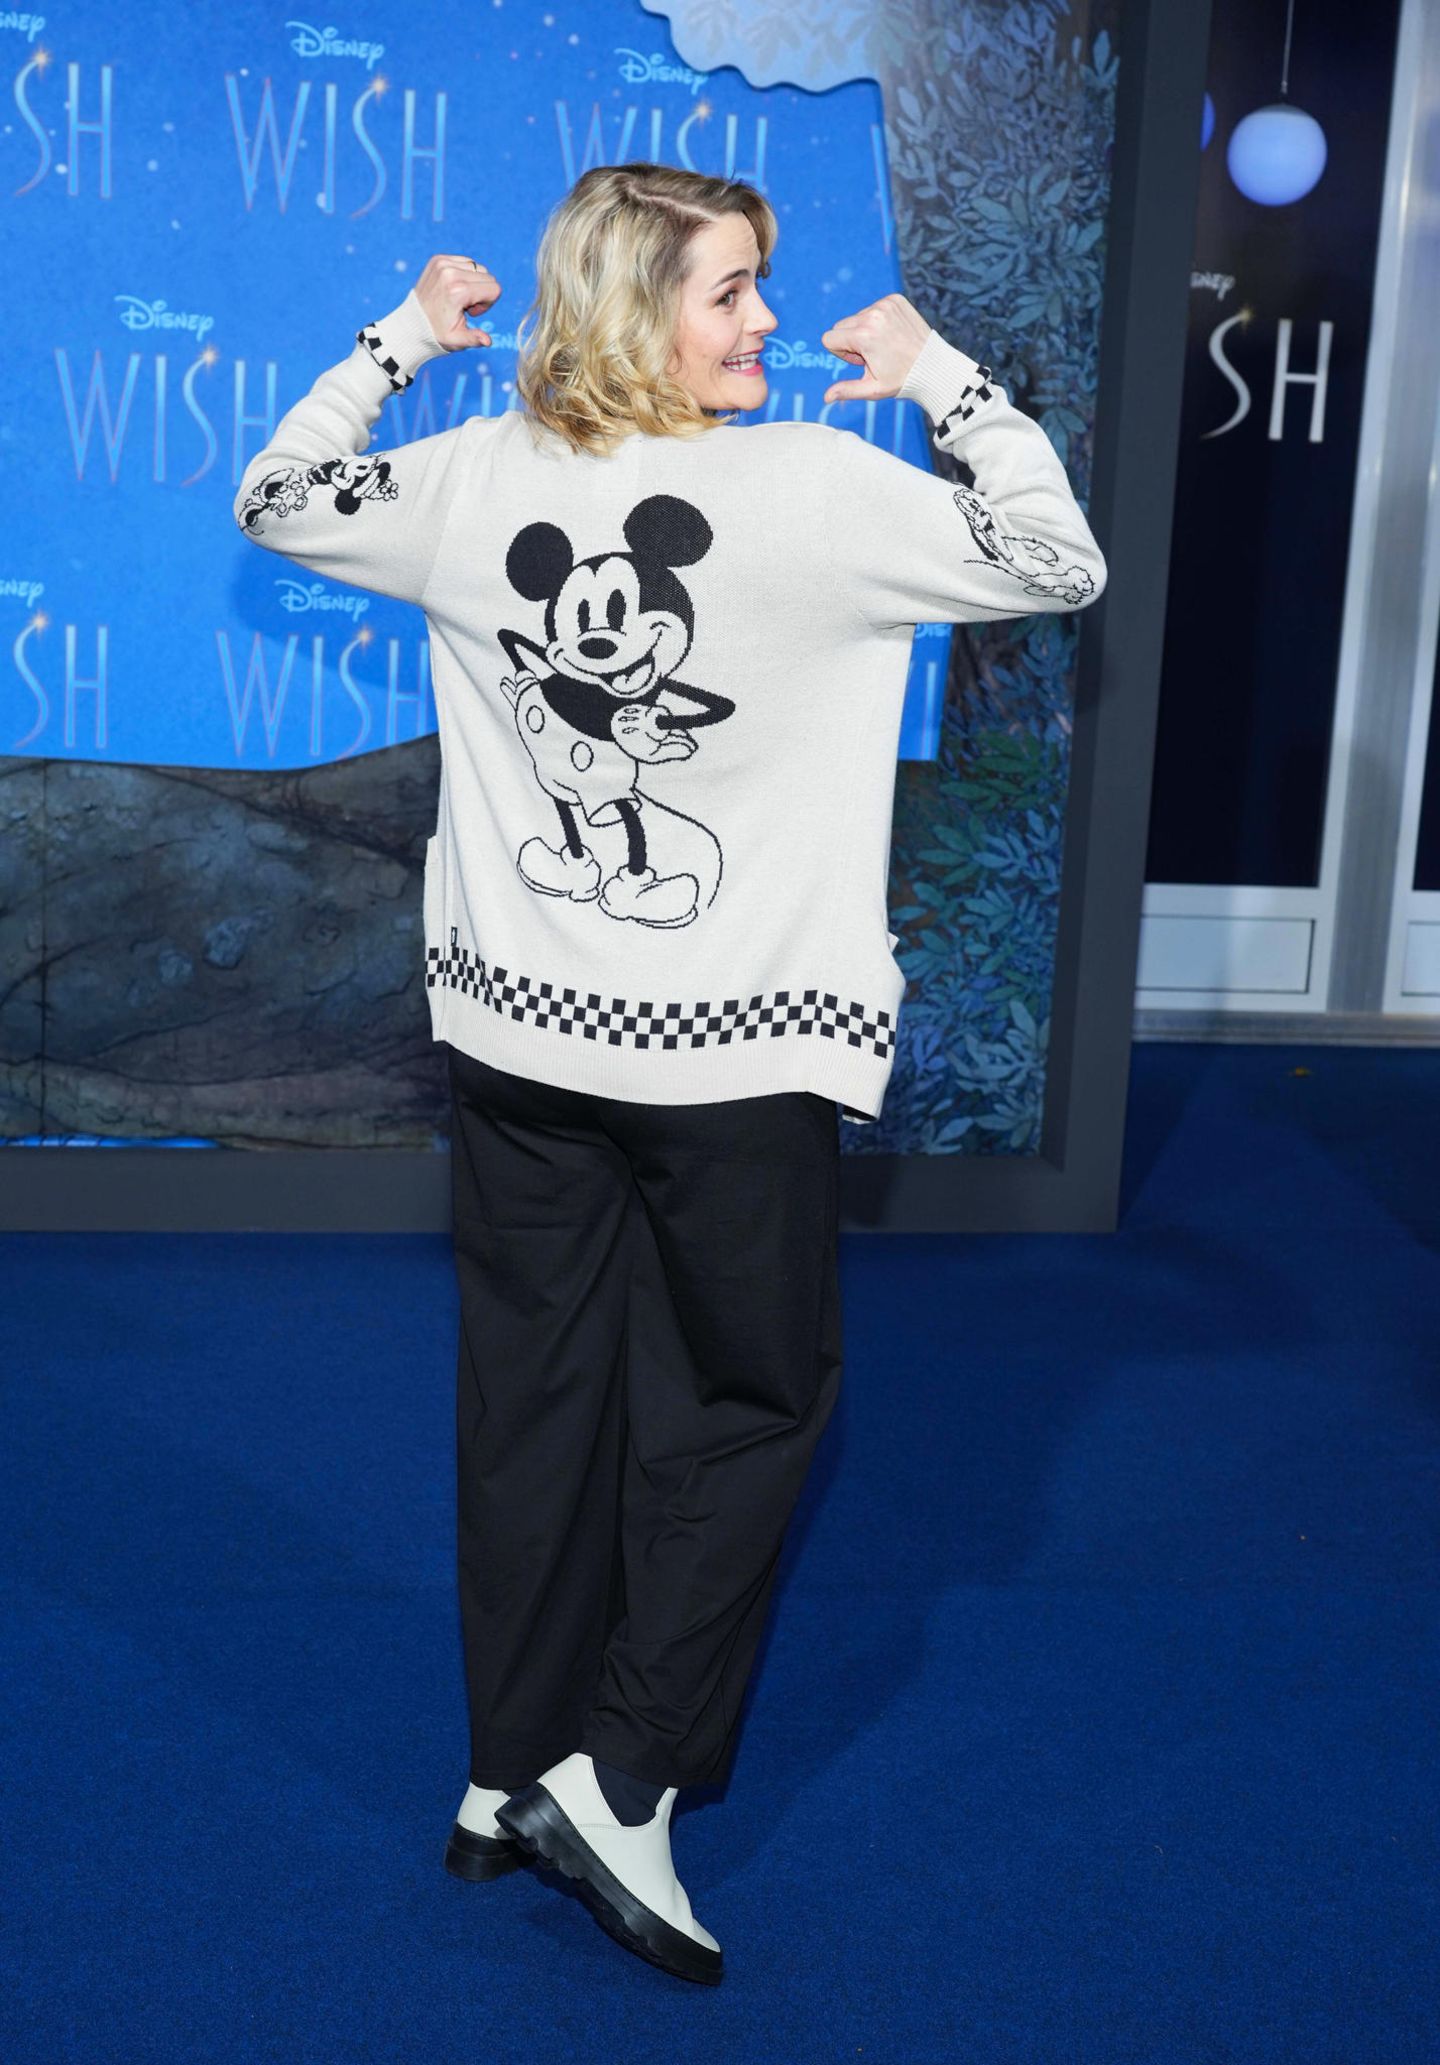 Comidienne und Podcasterin Hazel Brugger hat sich als Disney-Fan ihren eigenen Micky Maus auf grauem Cardigan zur schwarzen Hose gleich selbst mitgebracht.